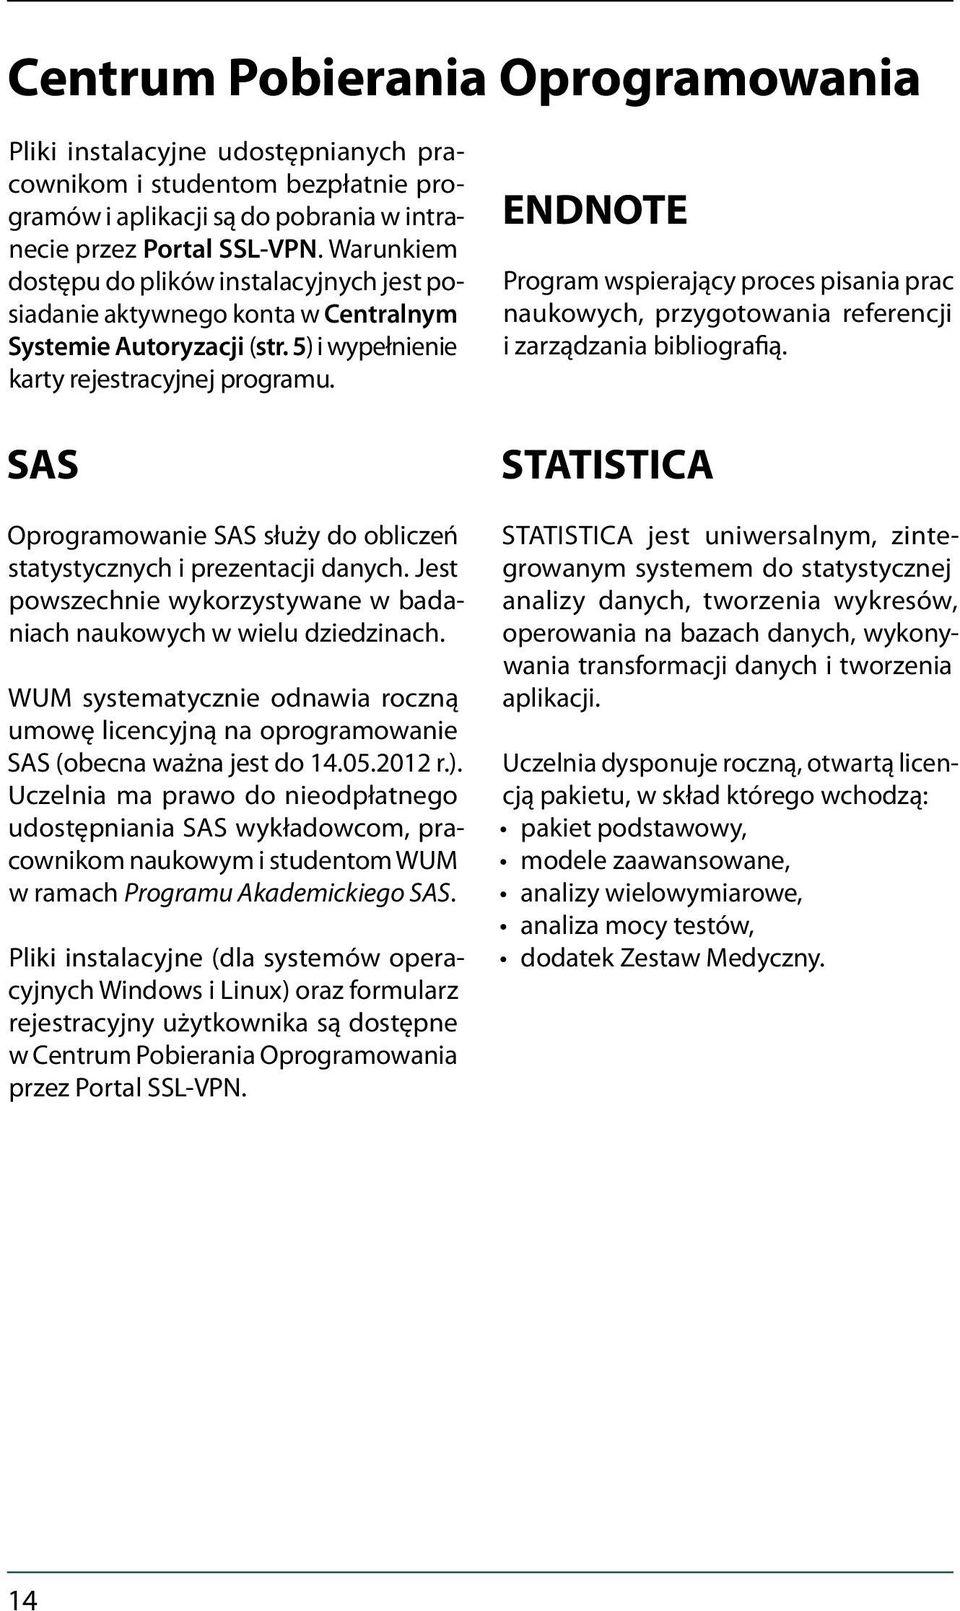 SAS Oprogramowanie SAS służy do obliczeń statystycznych i prezentacji danych. Jest powszechnie wykorzystywane w badaniach naukowych w wielu dziedzinach.